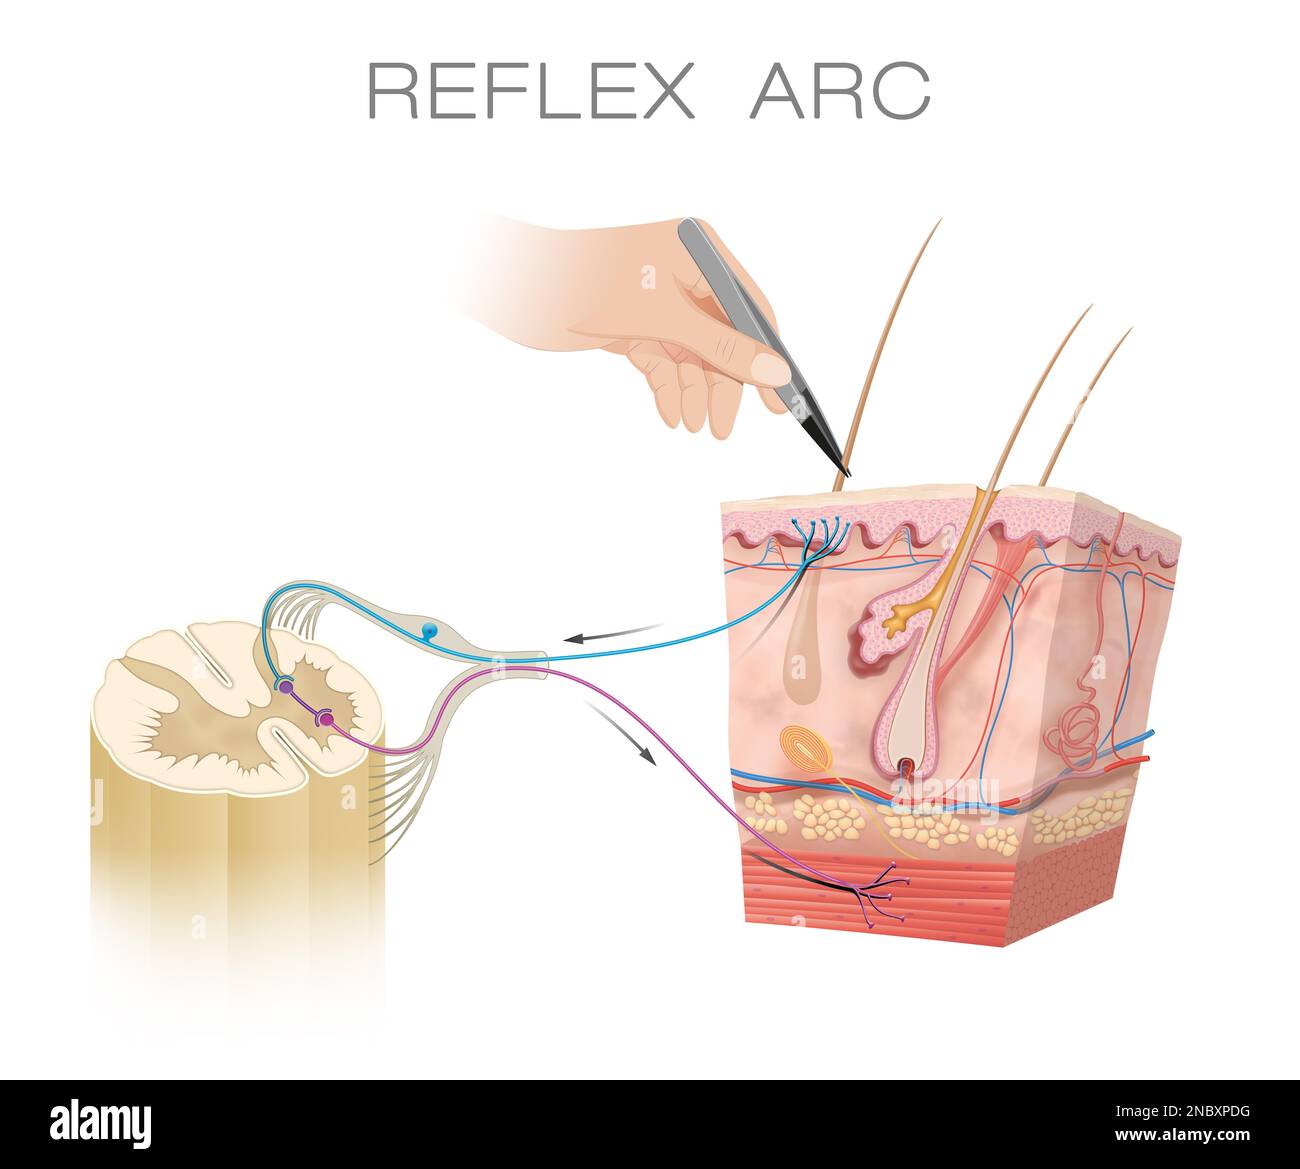 Spinal Reflex Arc Anatomical Scheme Stock Photo